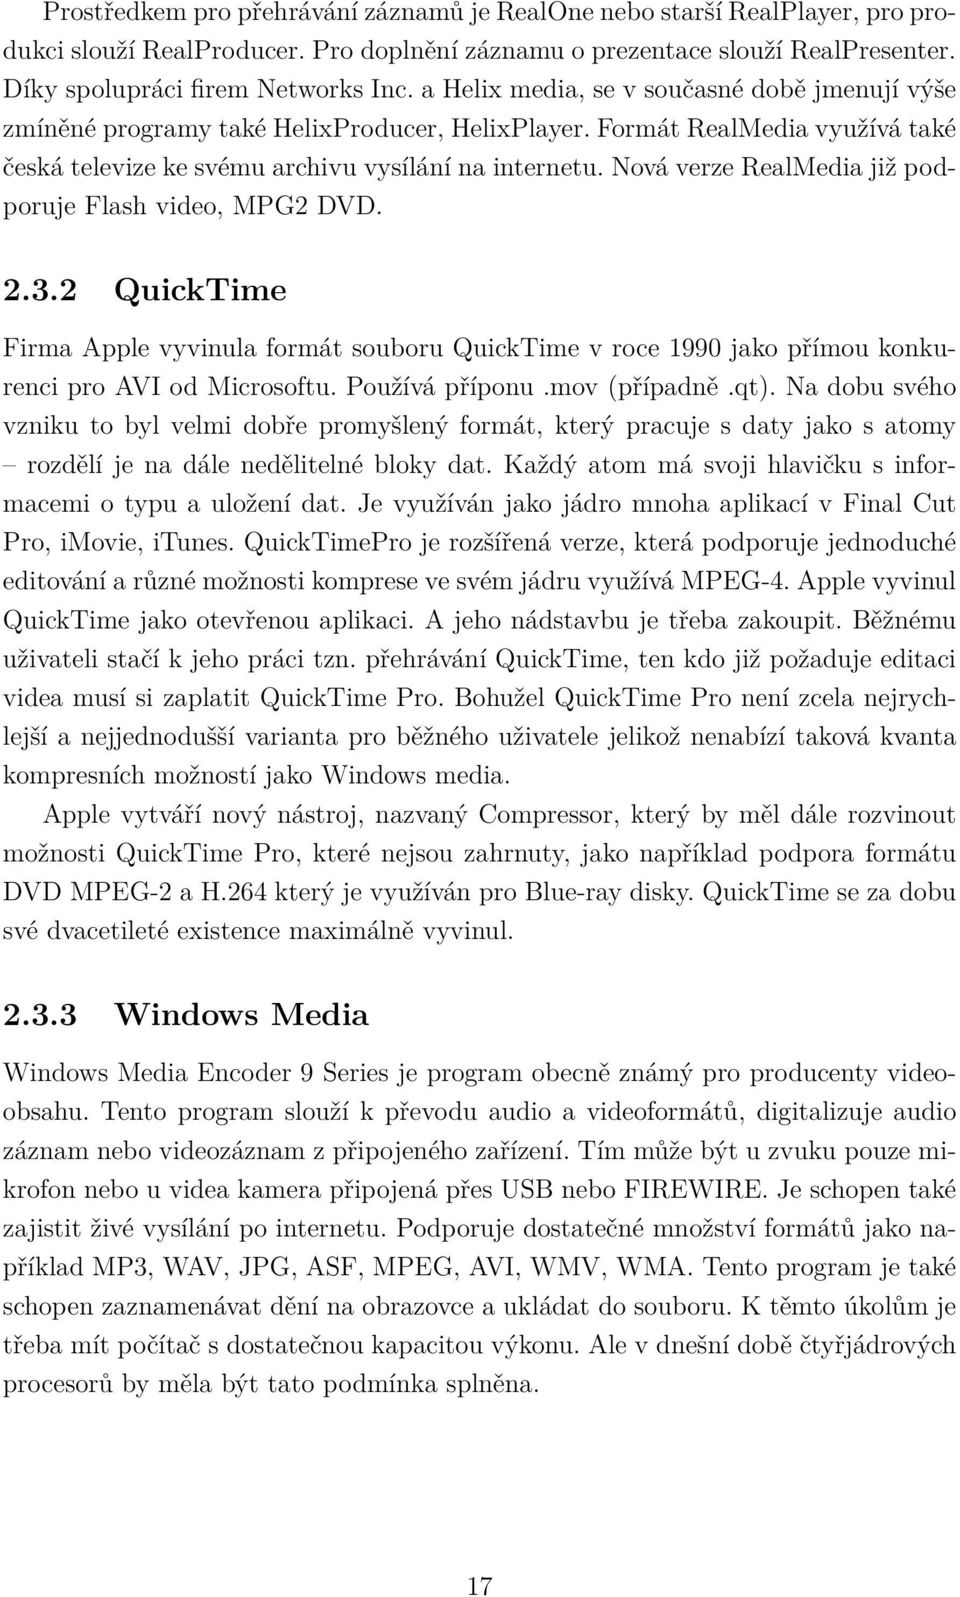 Nová verze RealMedia již podporuje Flash video, MPG2 DVD. 2.3.2 QuickTime Firma Apple vyvinula formát souboru QuickTime v roce 1990 jako přímou konkurenci pro AVI od Microsoftu. Používá příponu.